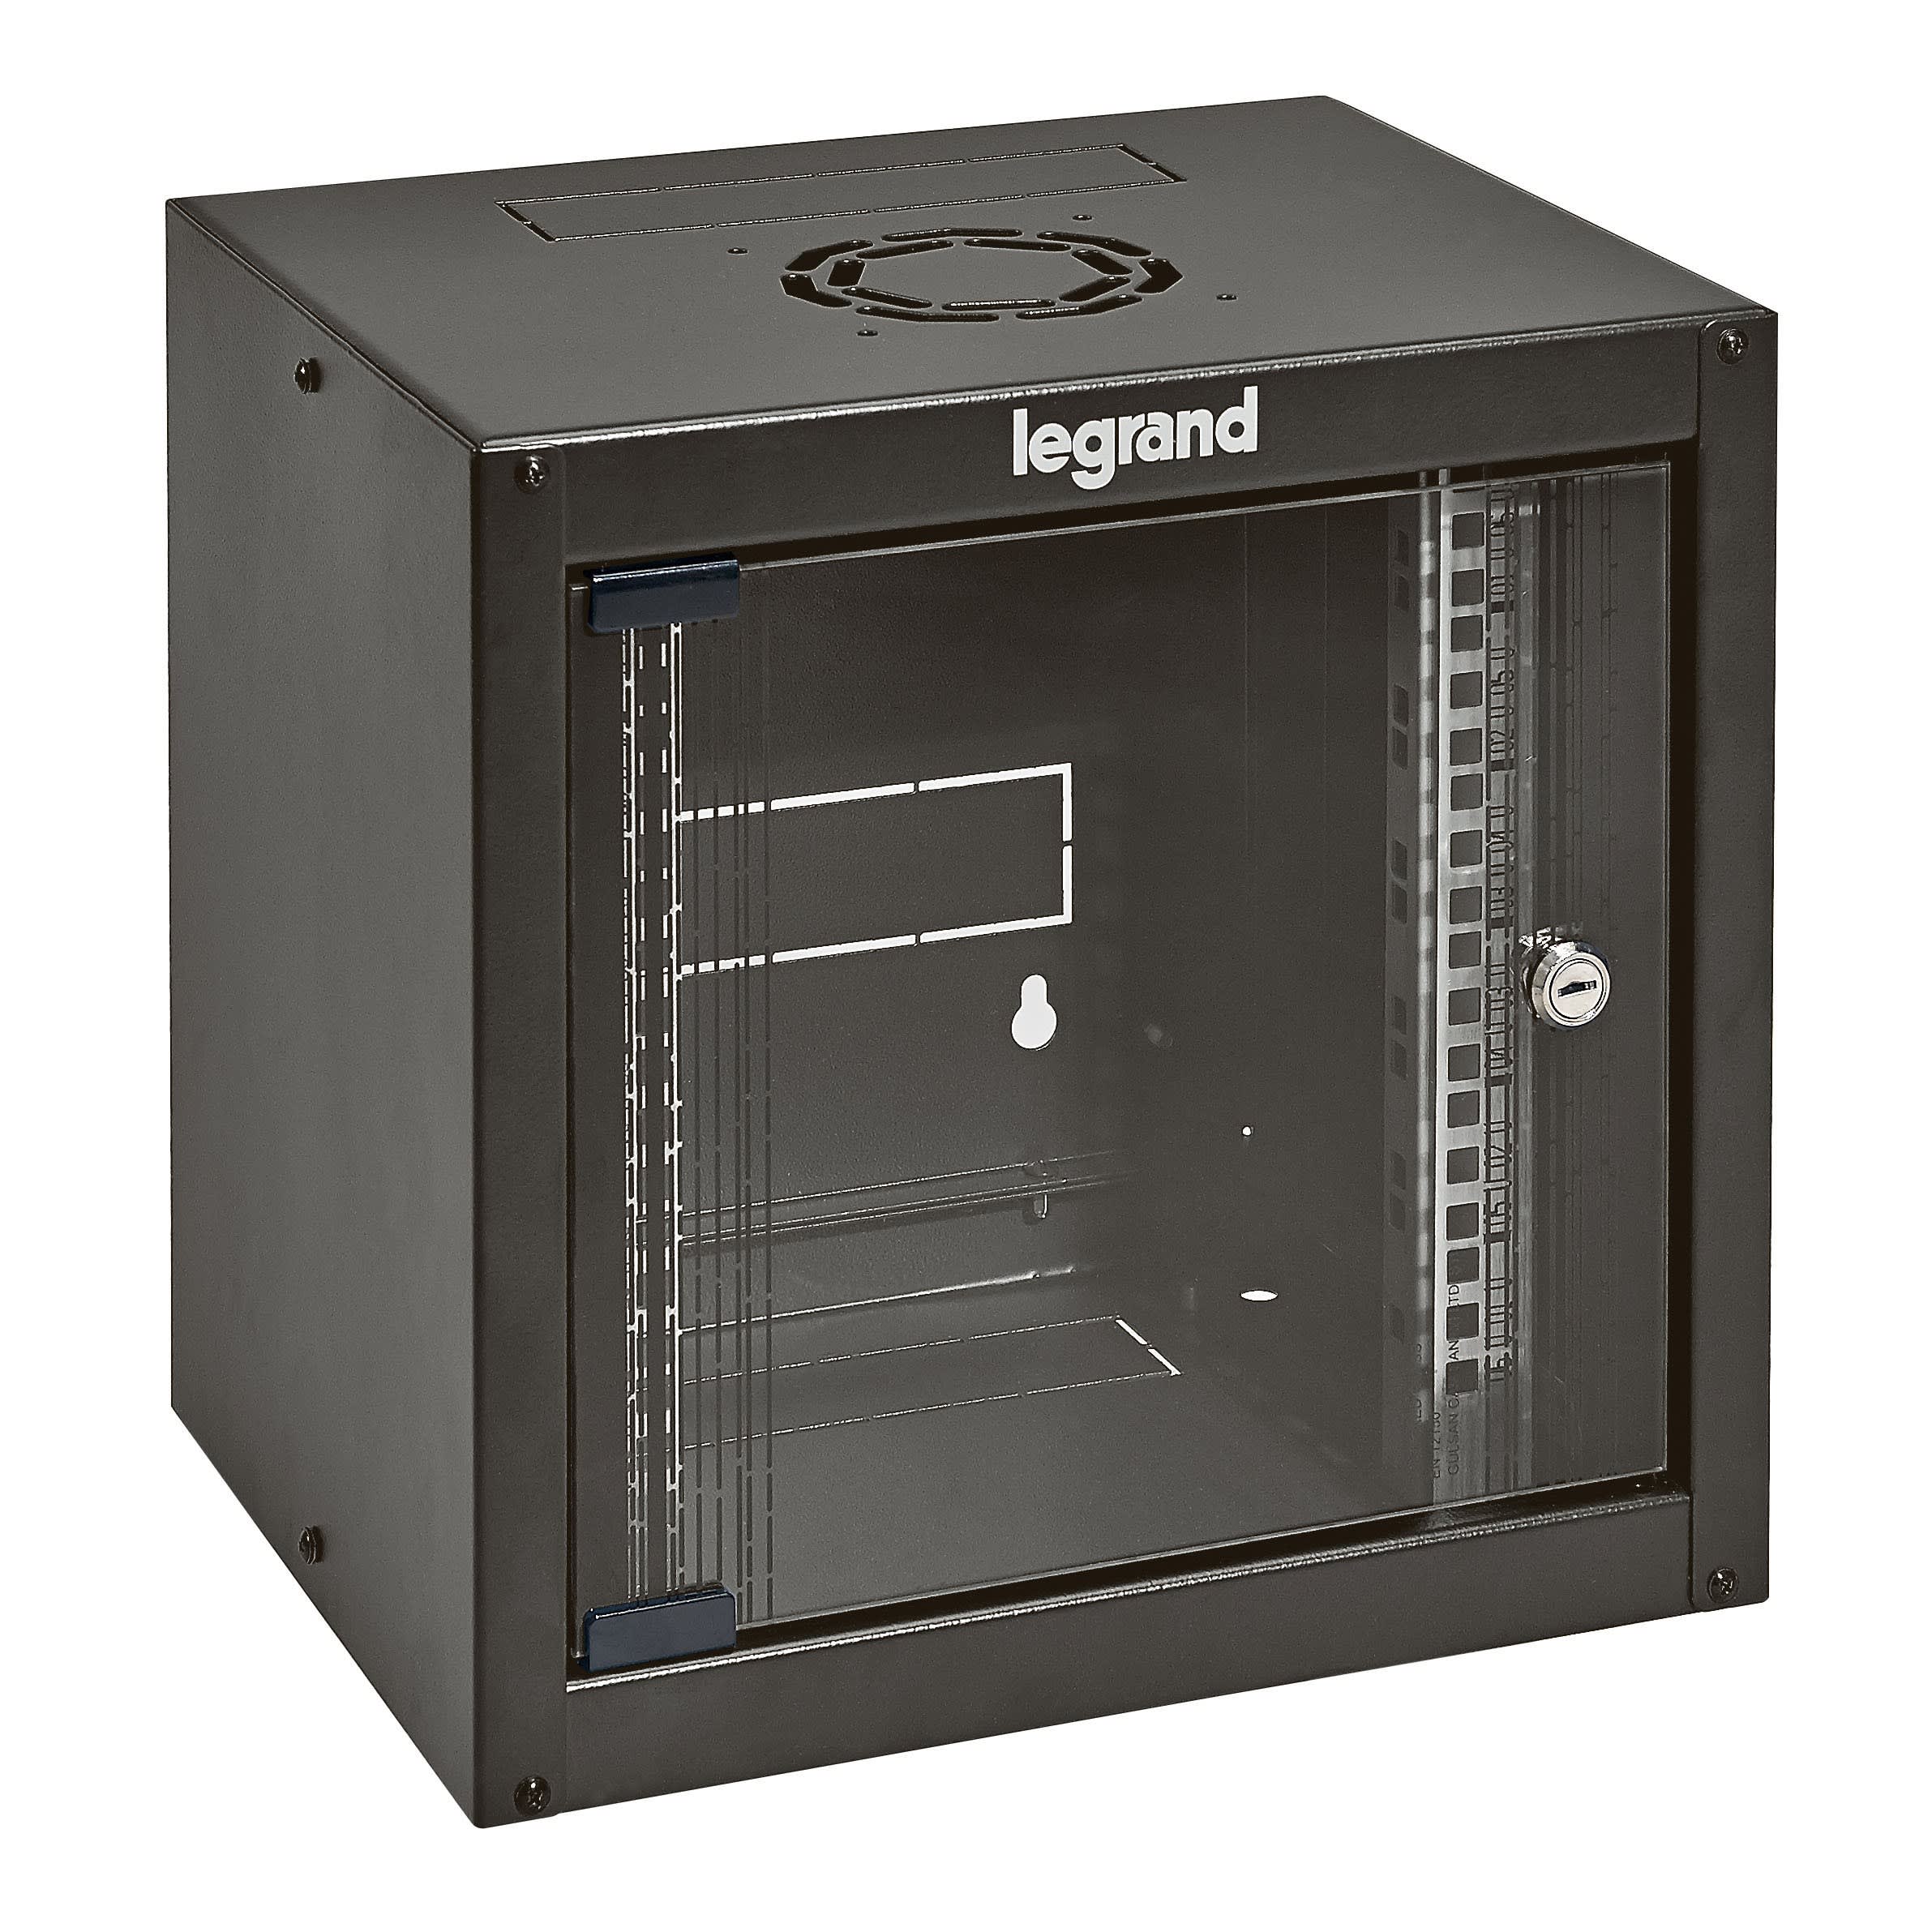 Legrand - Coffret fixe 10pouces livre monte Linkeo capacite 6U dimensions 359x370x300mm